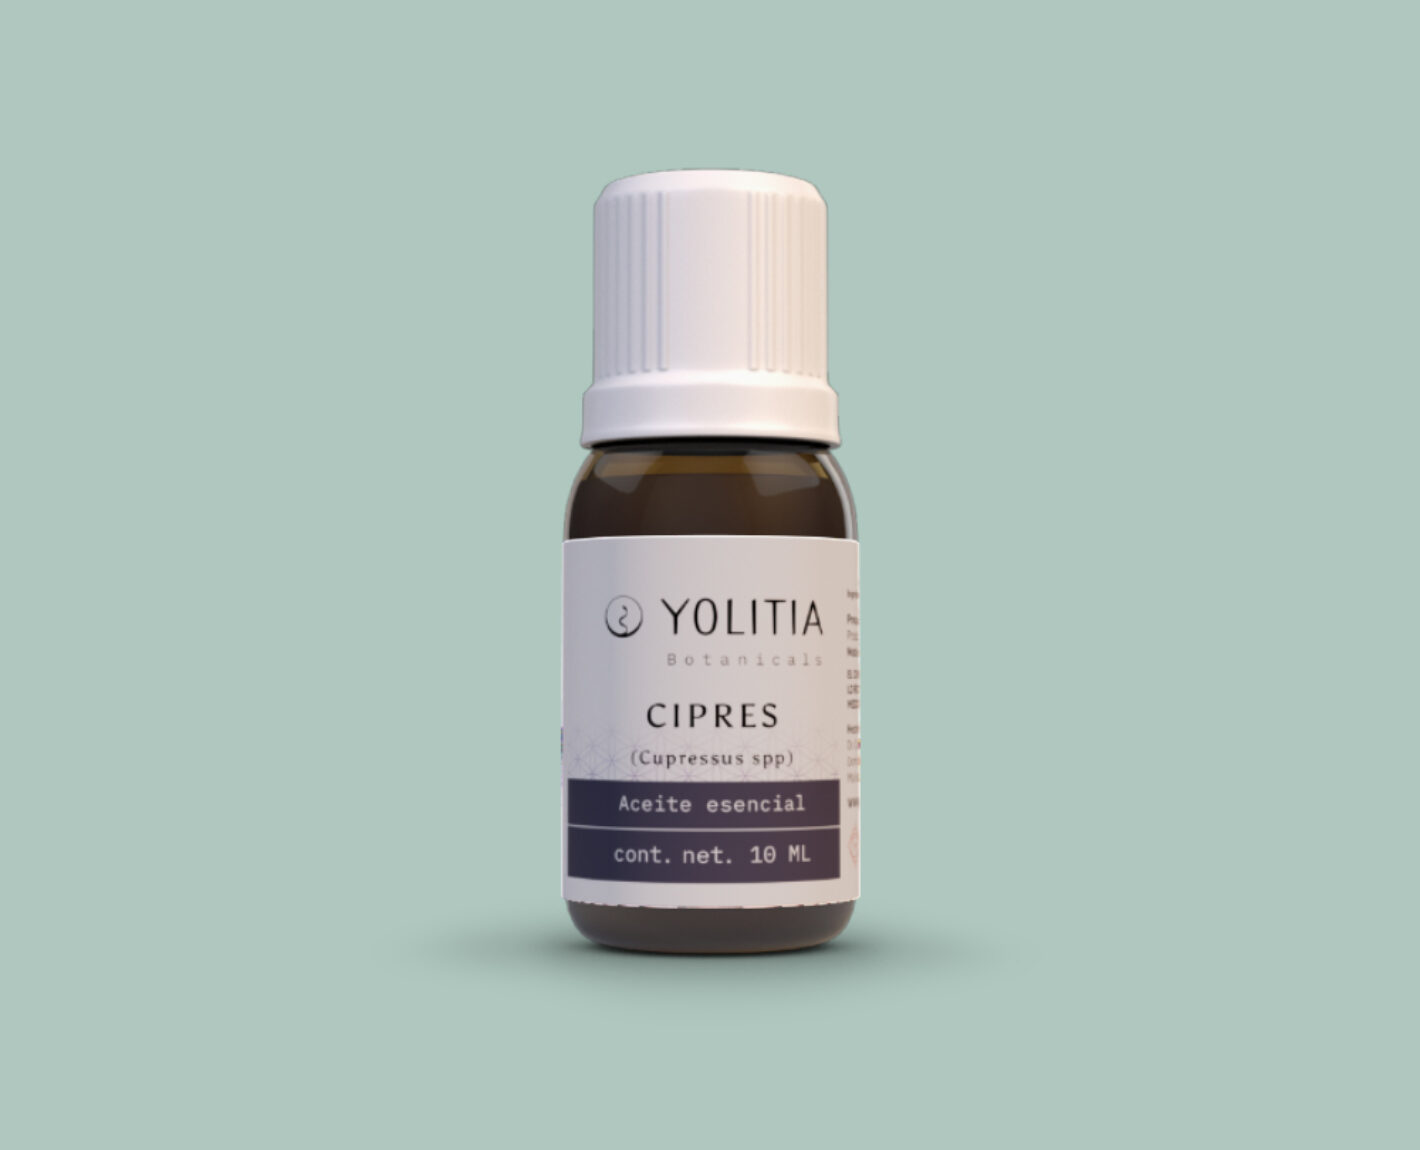 CIPRES(Cupressus spp) Aceite esencial